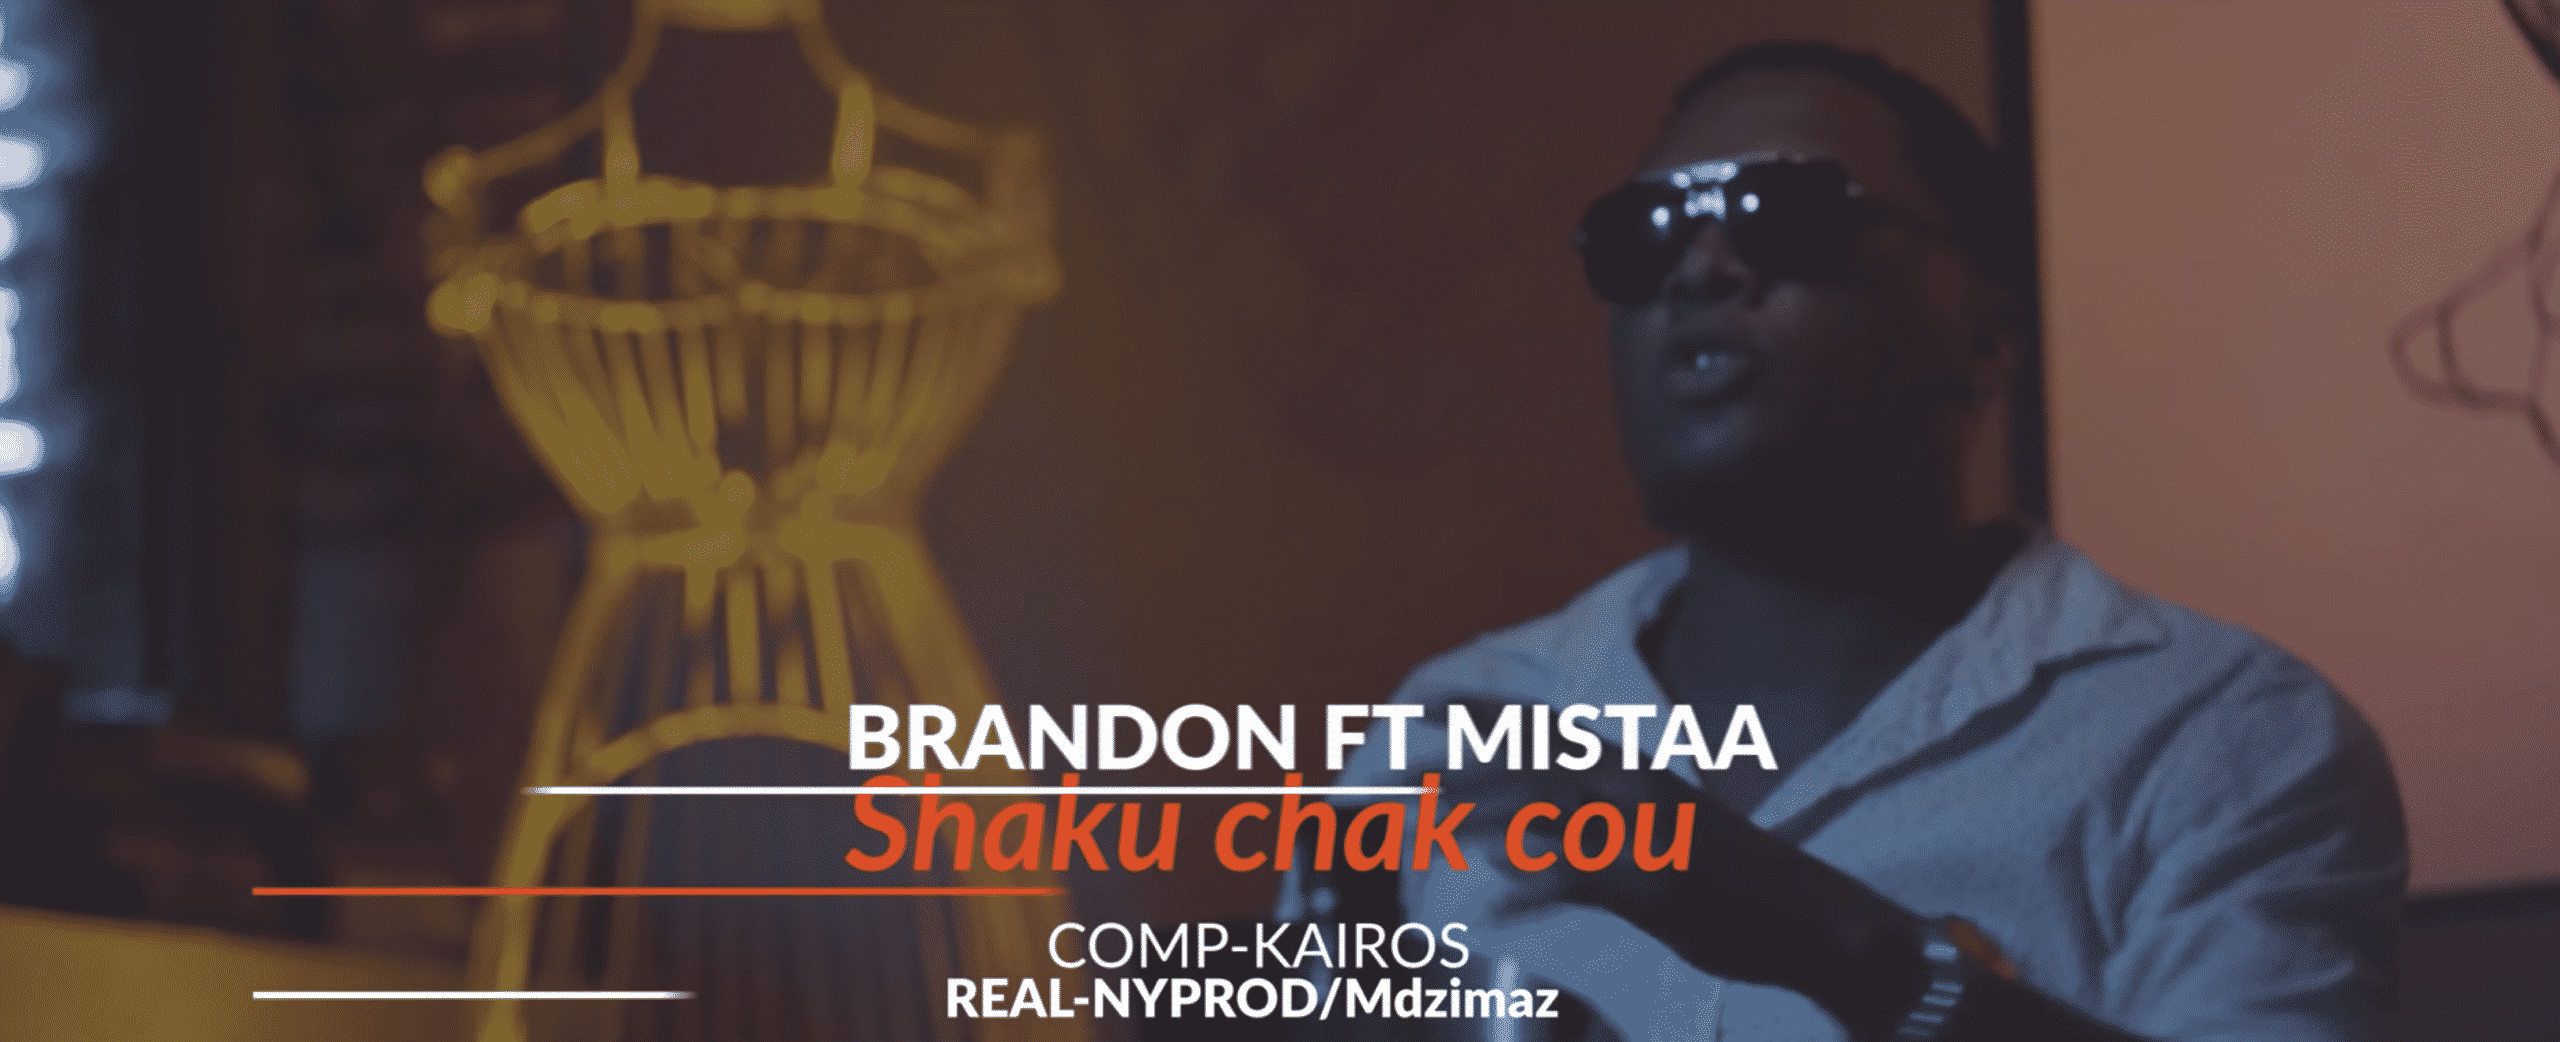 Brandon Palaxa et Mistaa sortent leur nouveau tube 'Shaku chak cou"